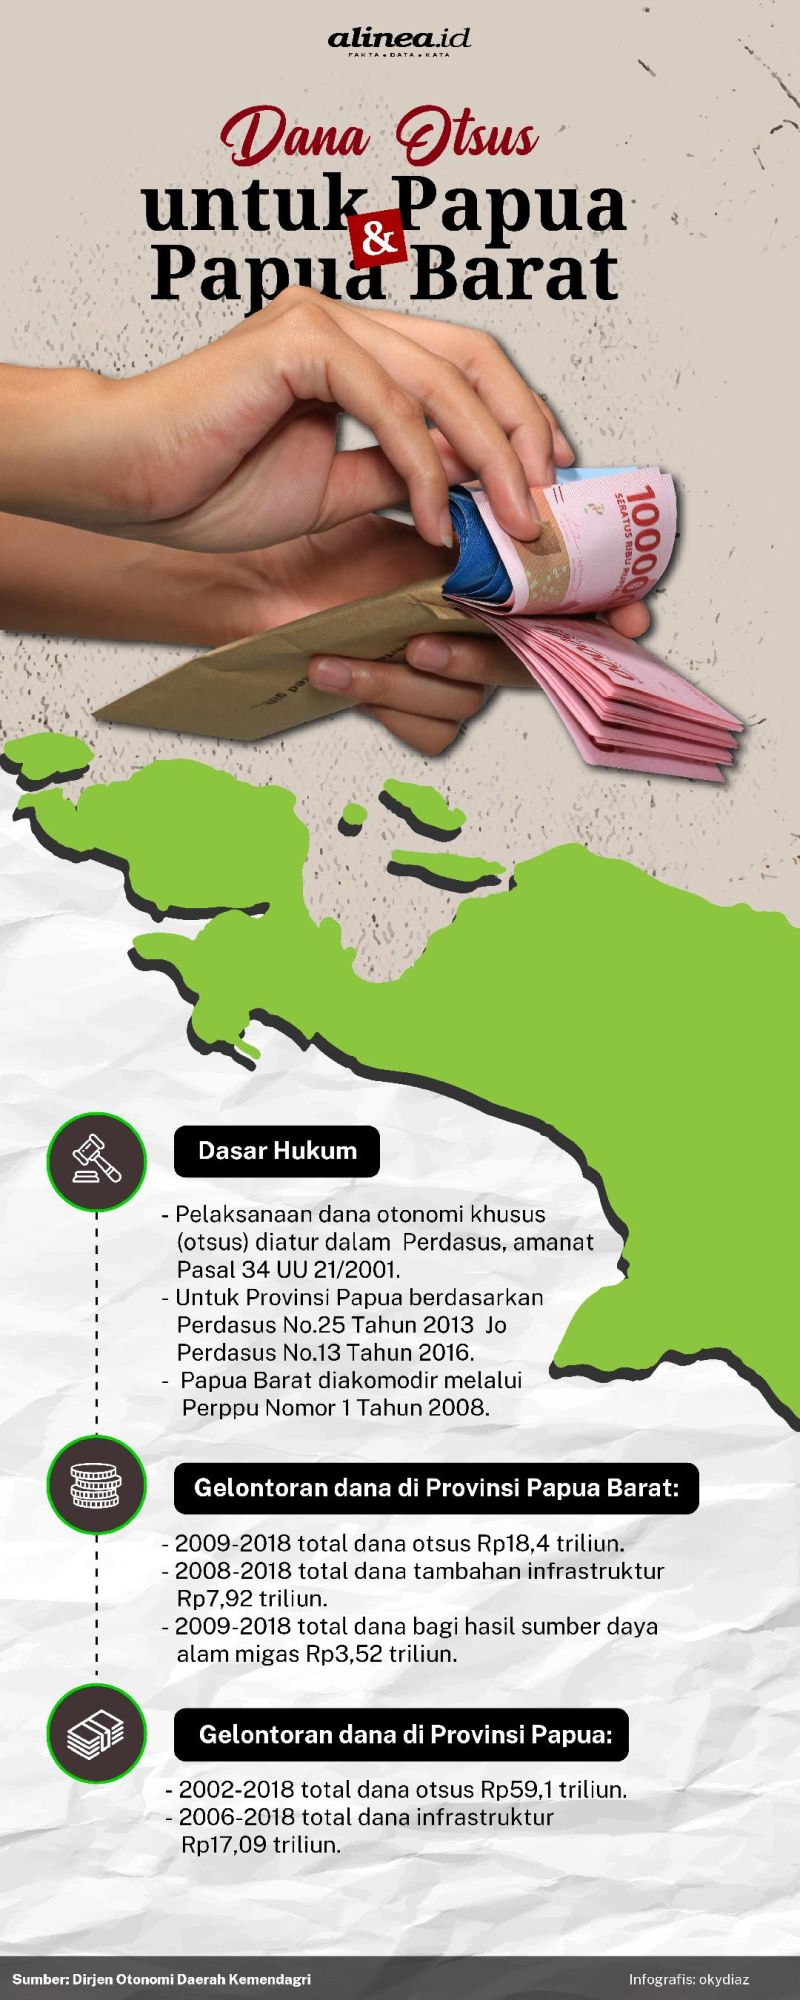 Dana triliunan rupiah sudah digelontorkan untuk otonomi khusus di Papua dan Papua Barat.